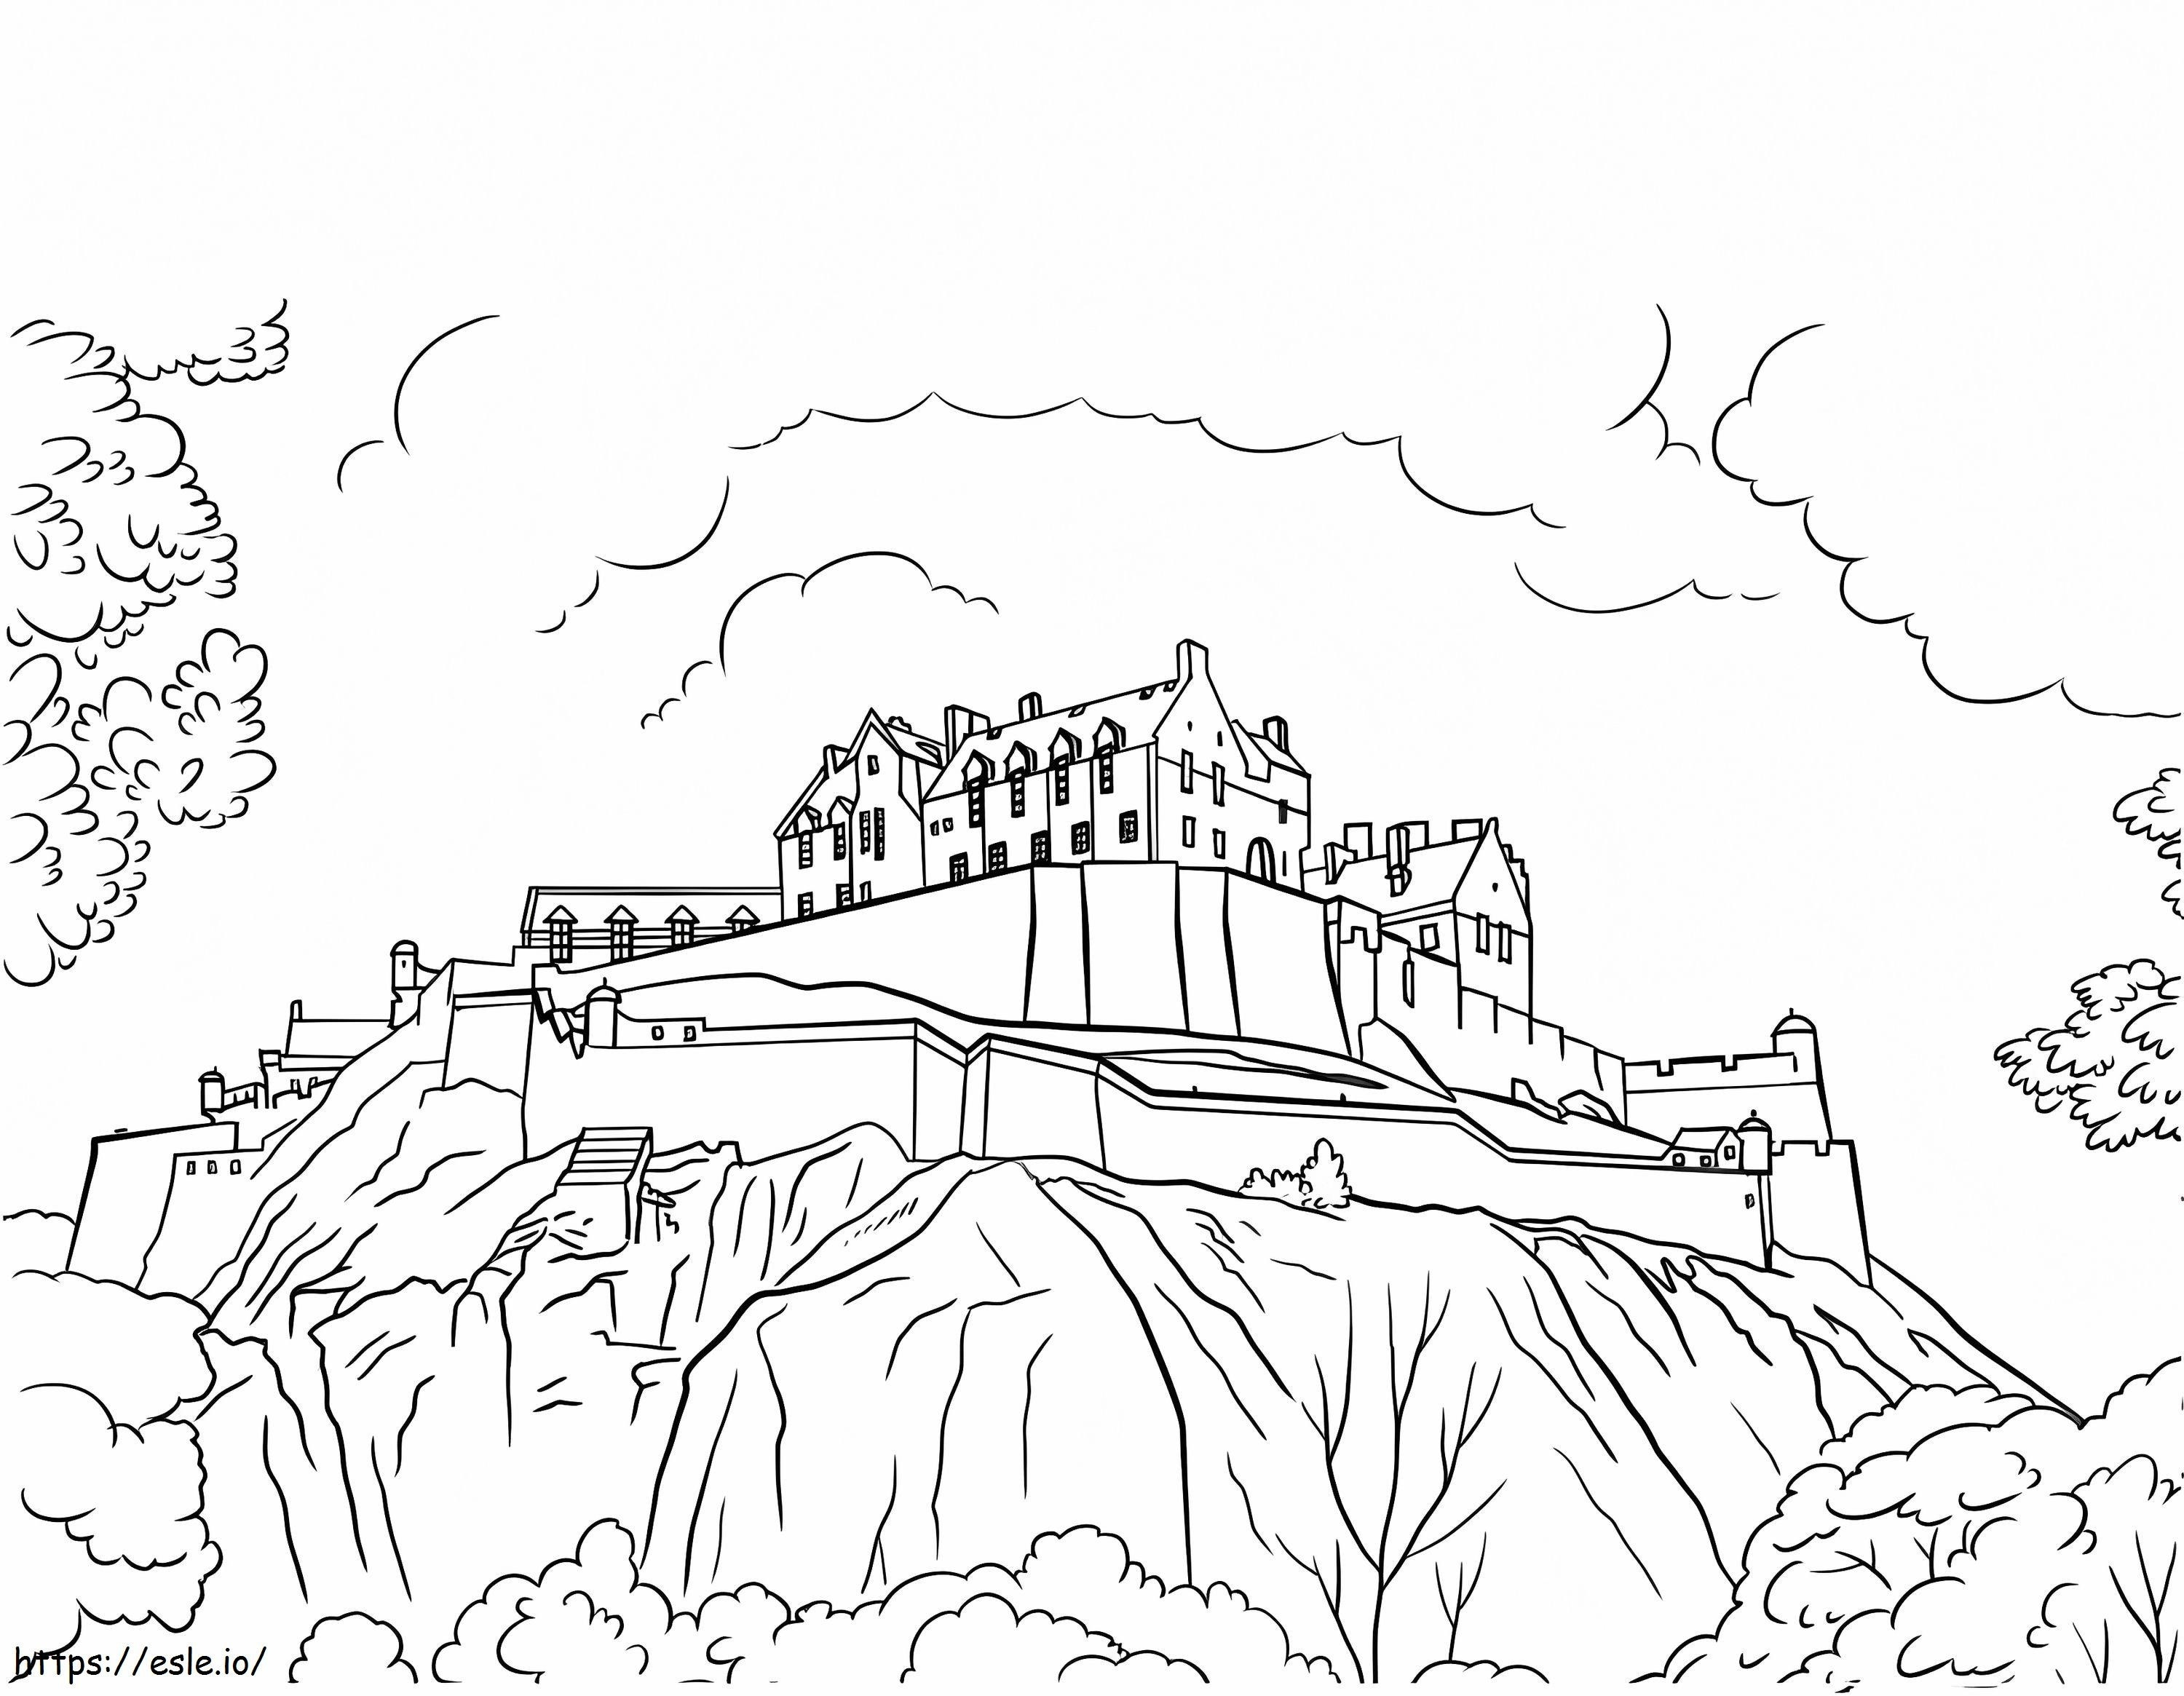 Edinburgh Castle coloring page